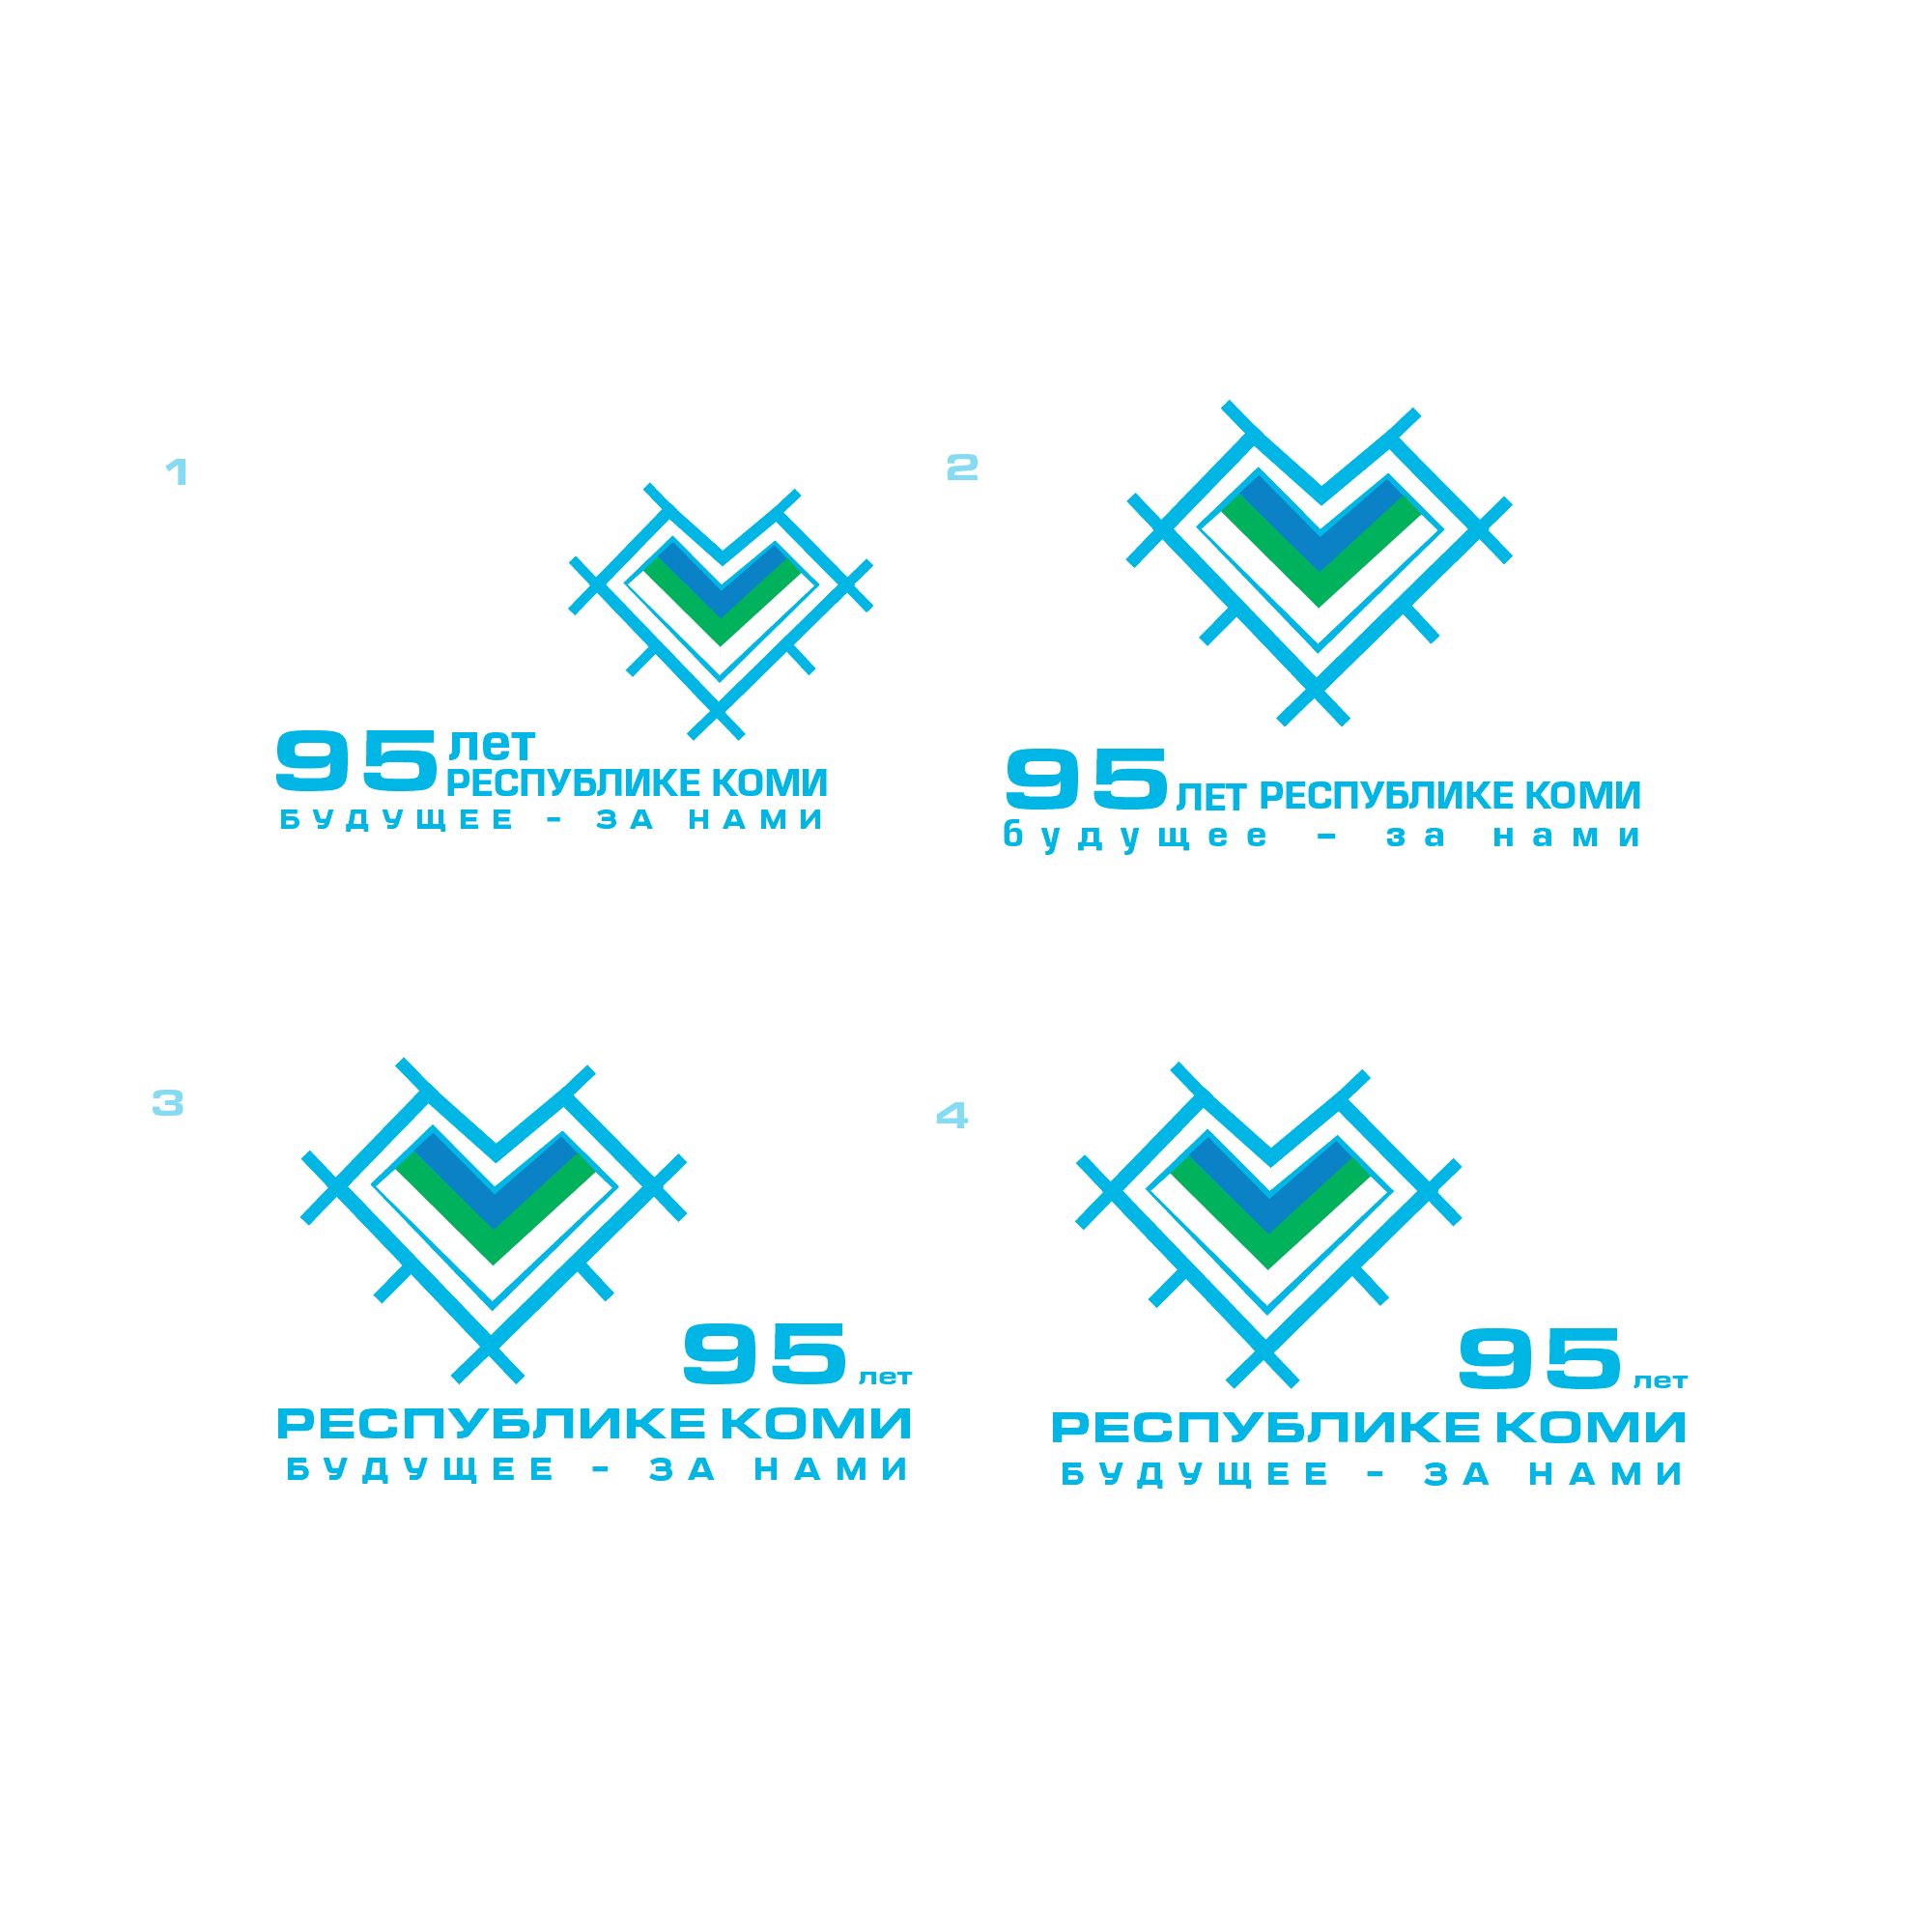 Лого и фирменный стиль для 95 лет Республике Коми  - дизайнер SmolinDenis